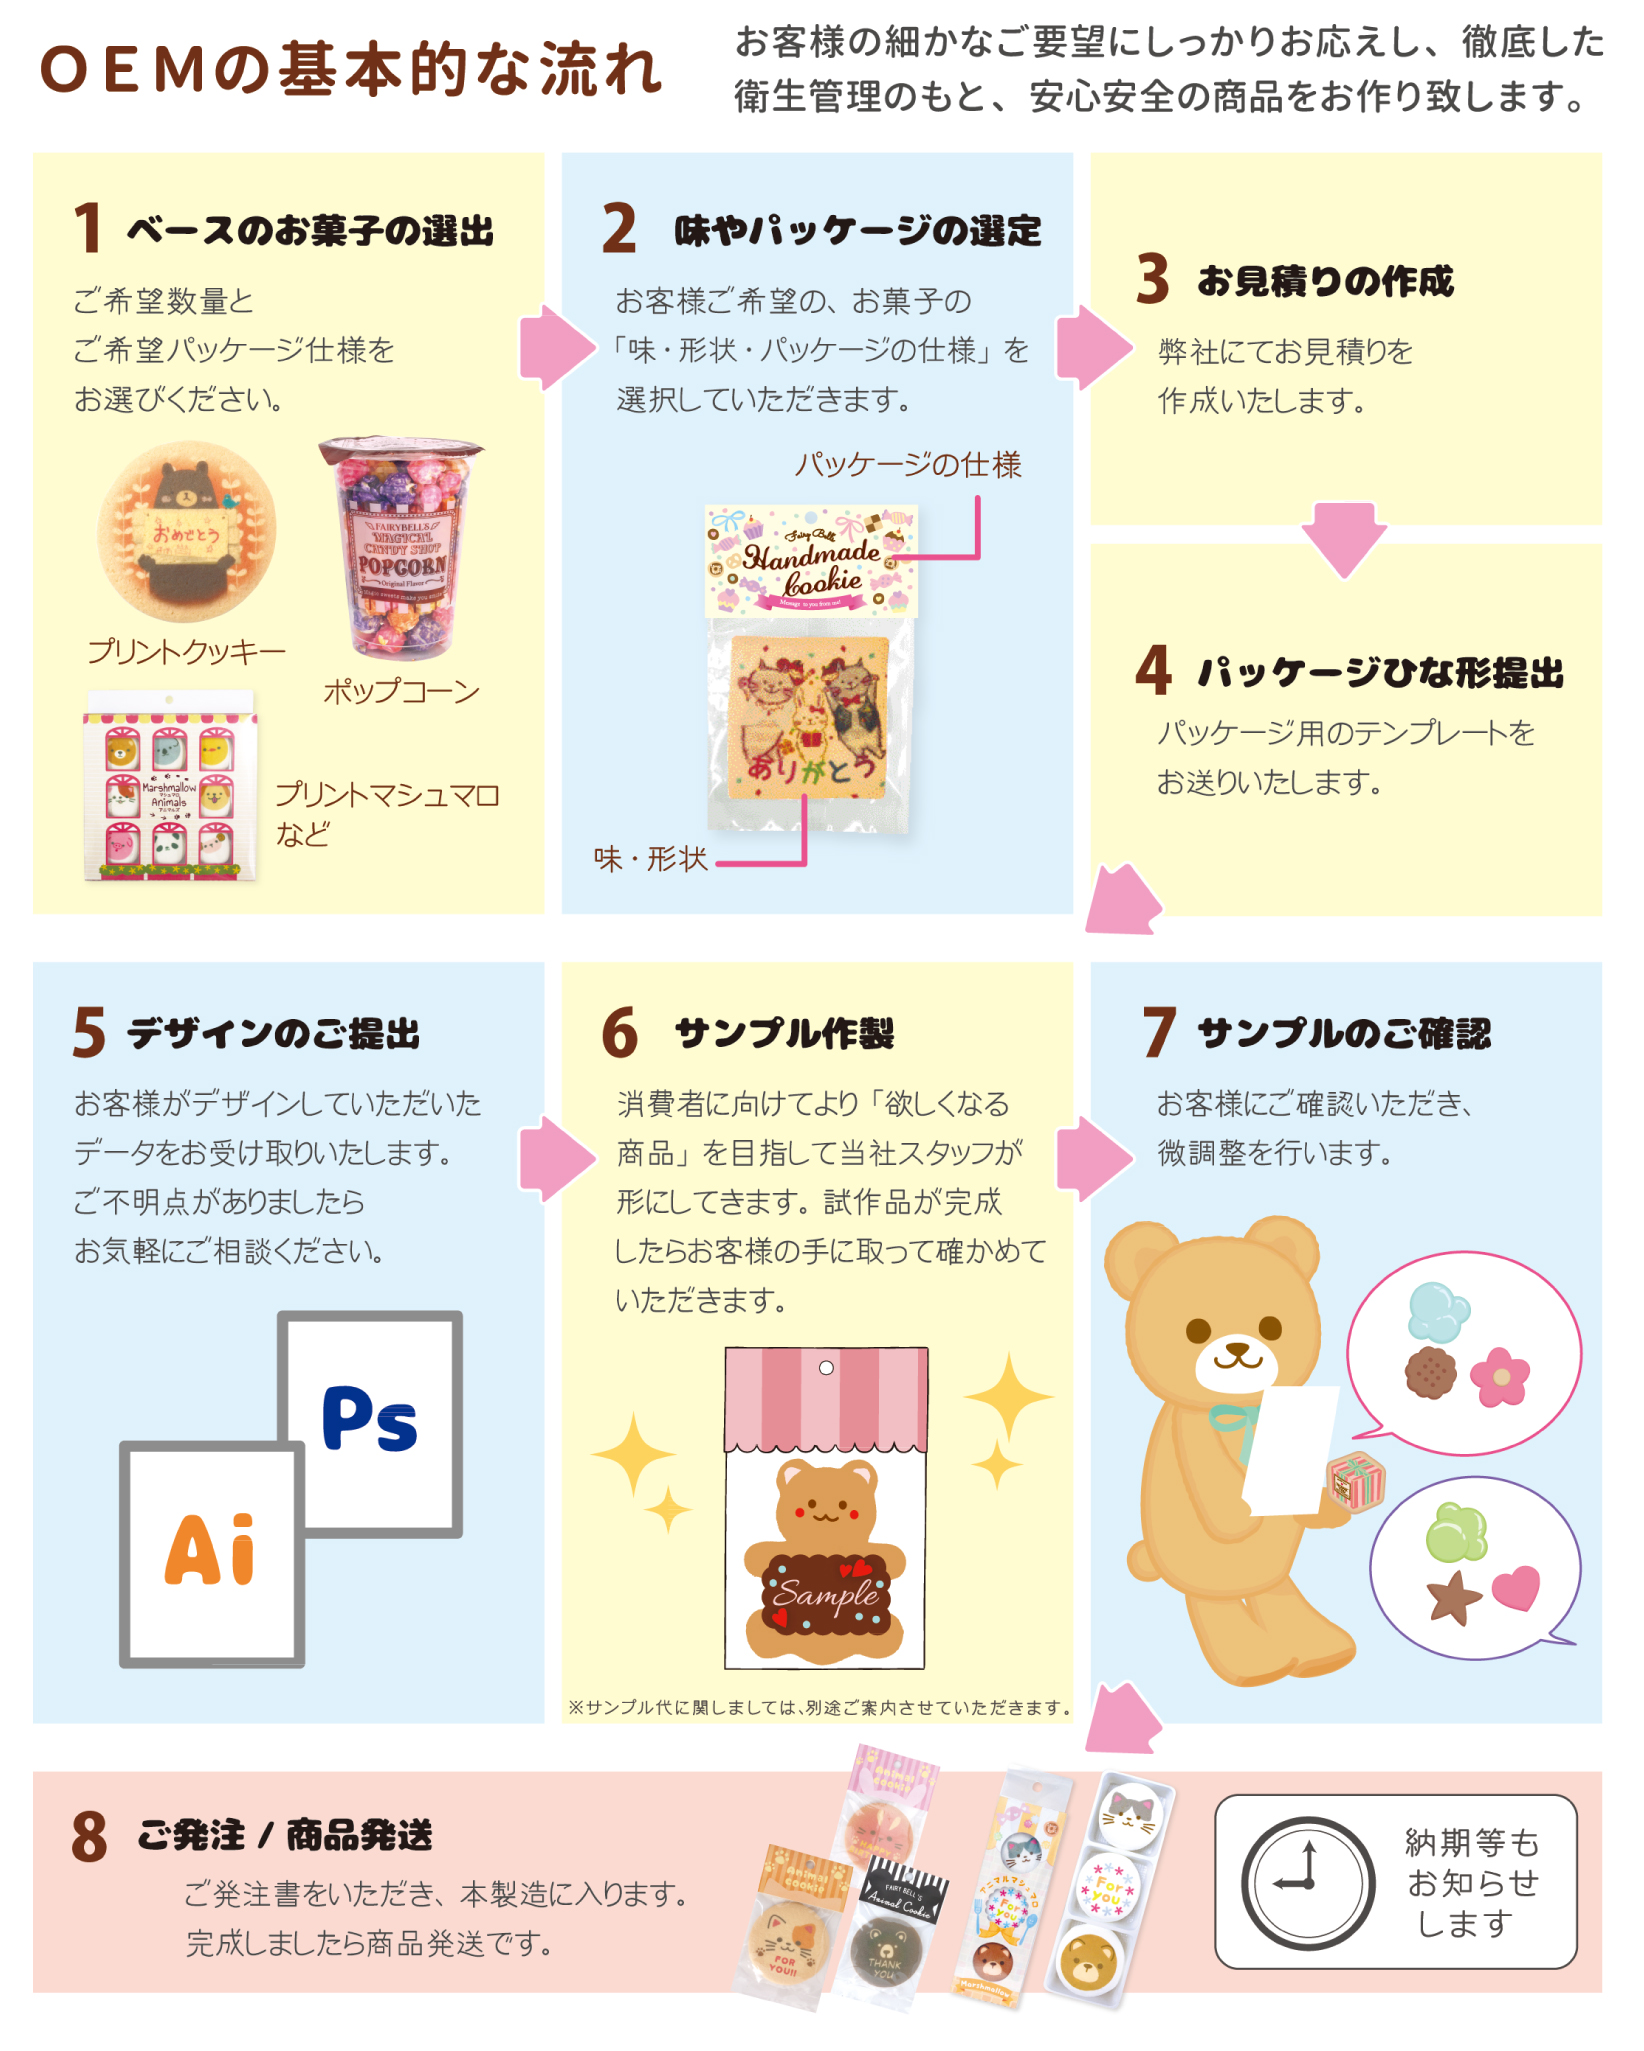 お菓子OEM案内 | 名古屋でお菓子のOEM製造・雑貨販売 - ジップ 